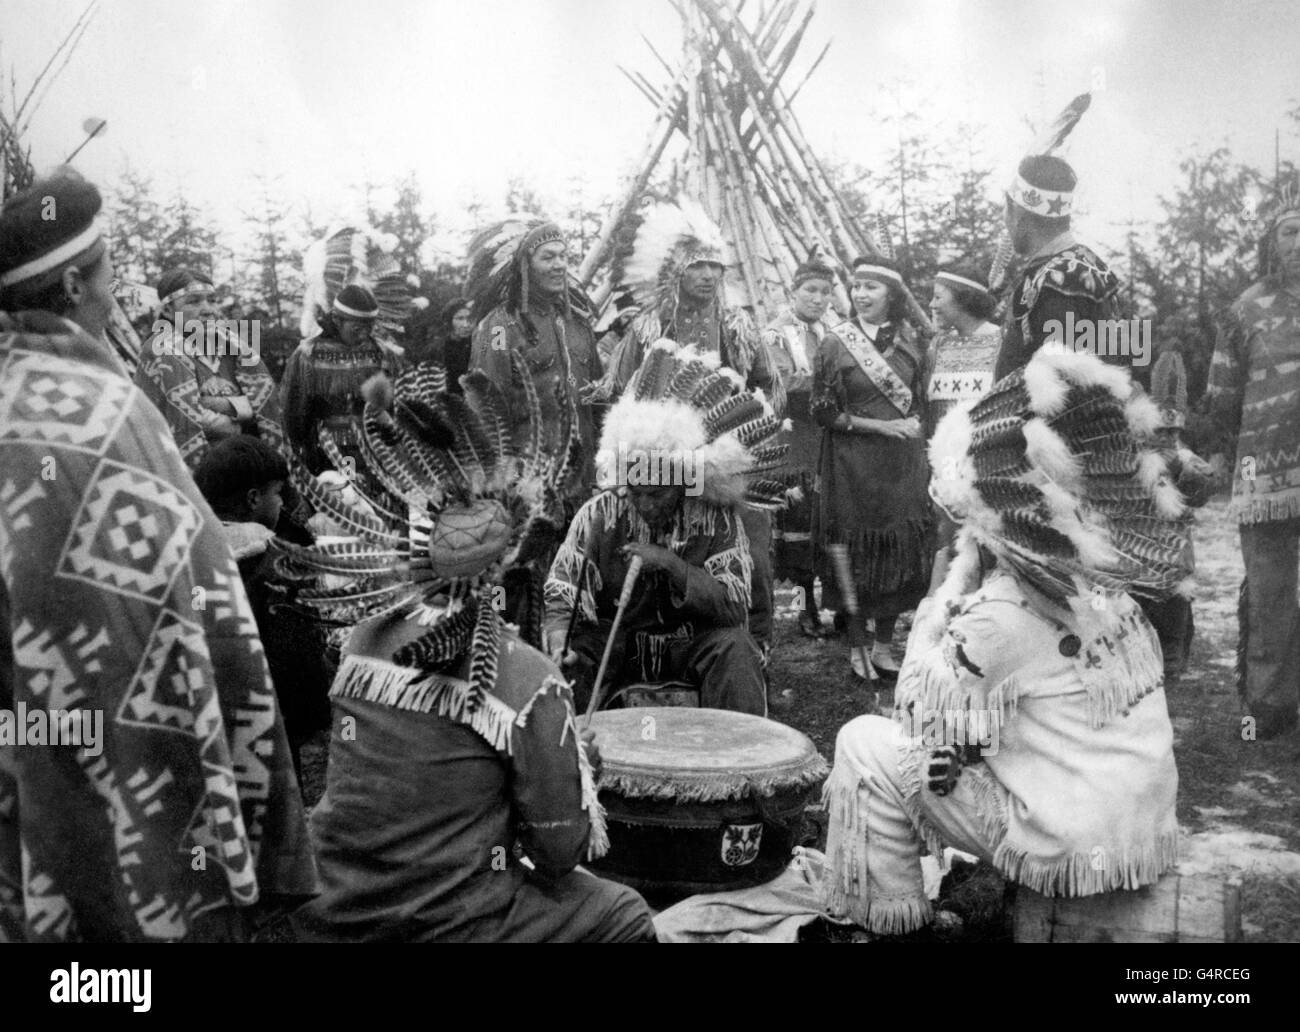 Les Indiens Ojibwy ont installé un site de camp, avec des teepees, des tom-toms et des pipes de paix lors de la visite de la princesse Elizabeth et du duc d'Édimbourg à Port Arthur (Ontario). Banque D'Images